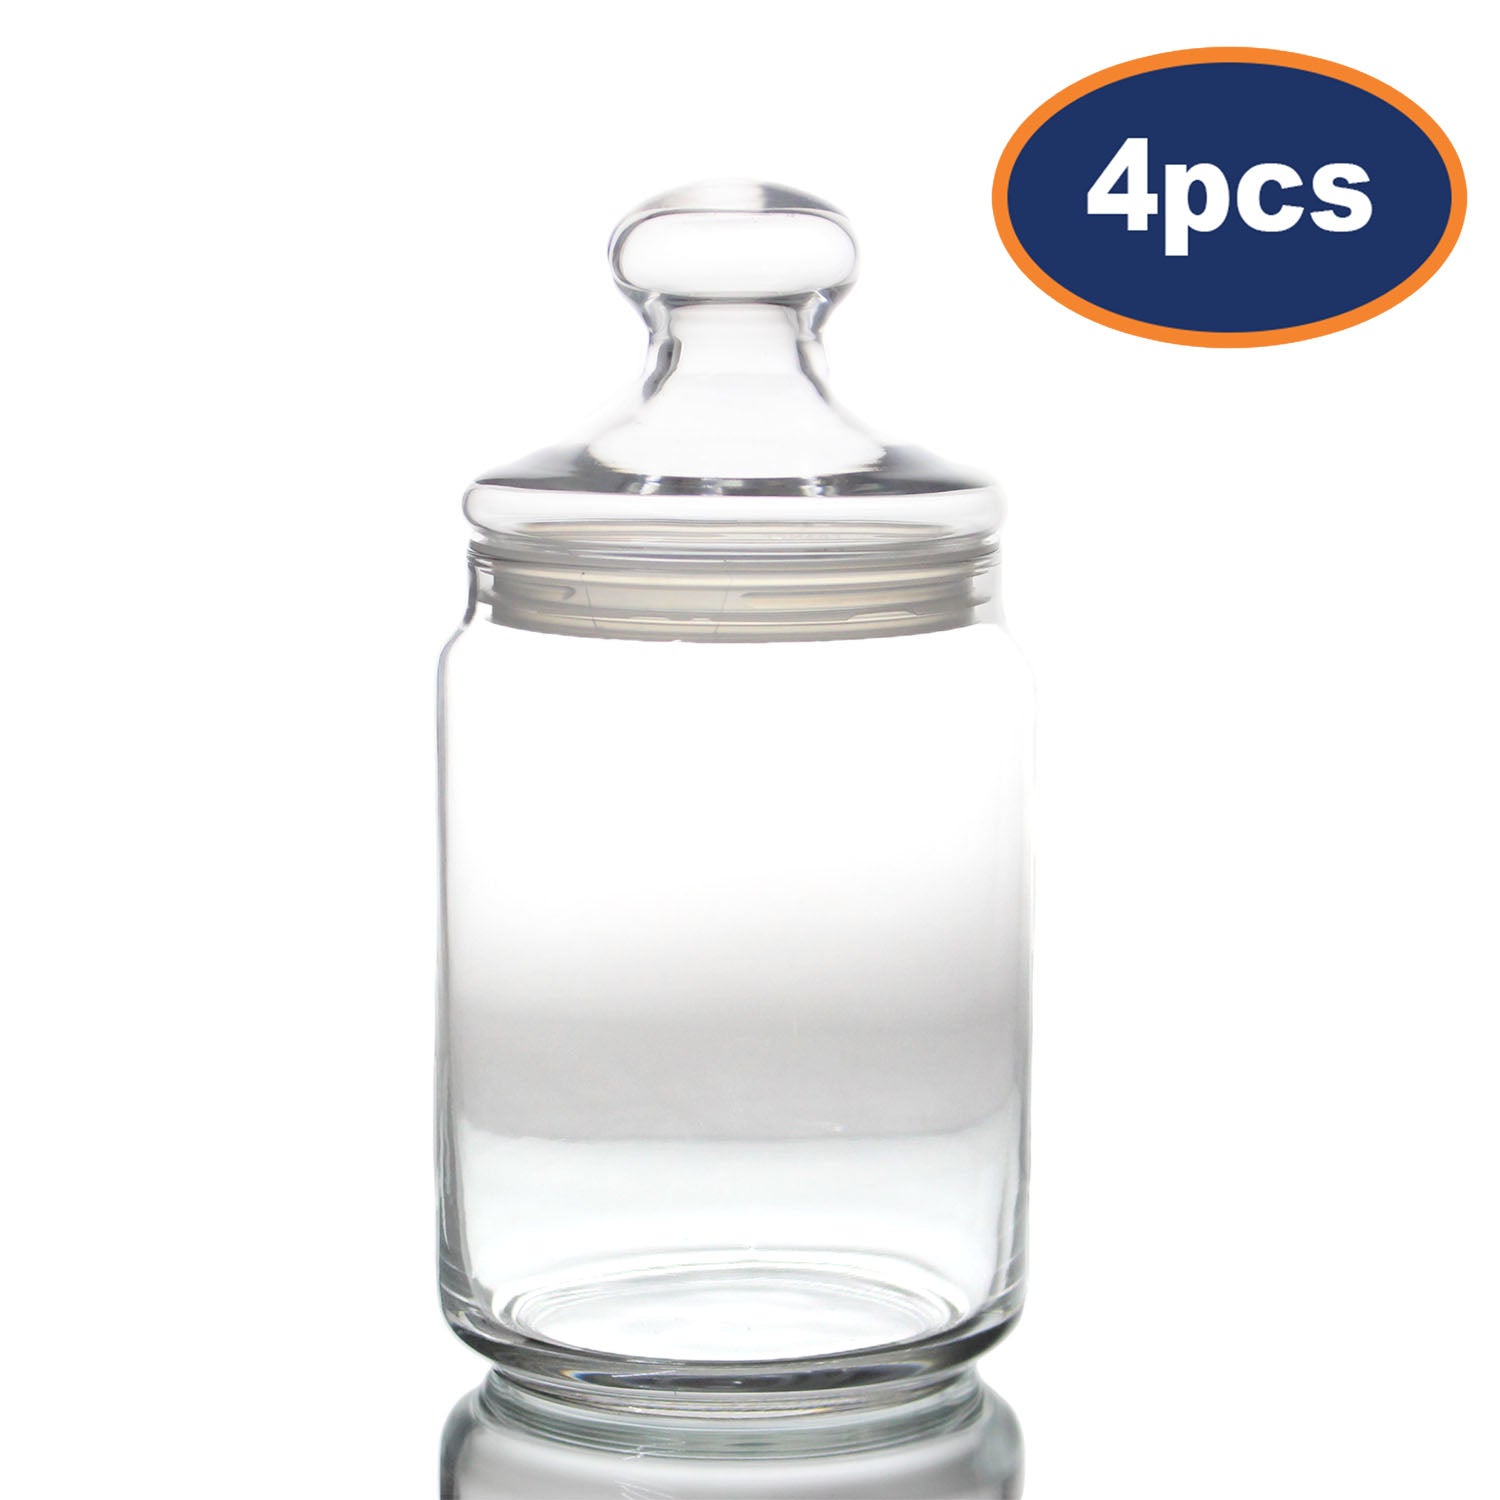 4pcs 1.5L Big Tempered Potclub Glass Jar